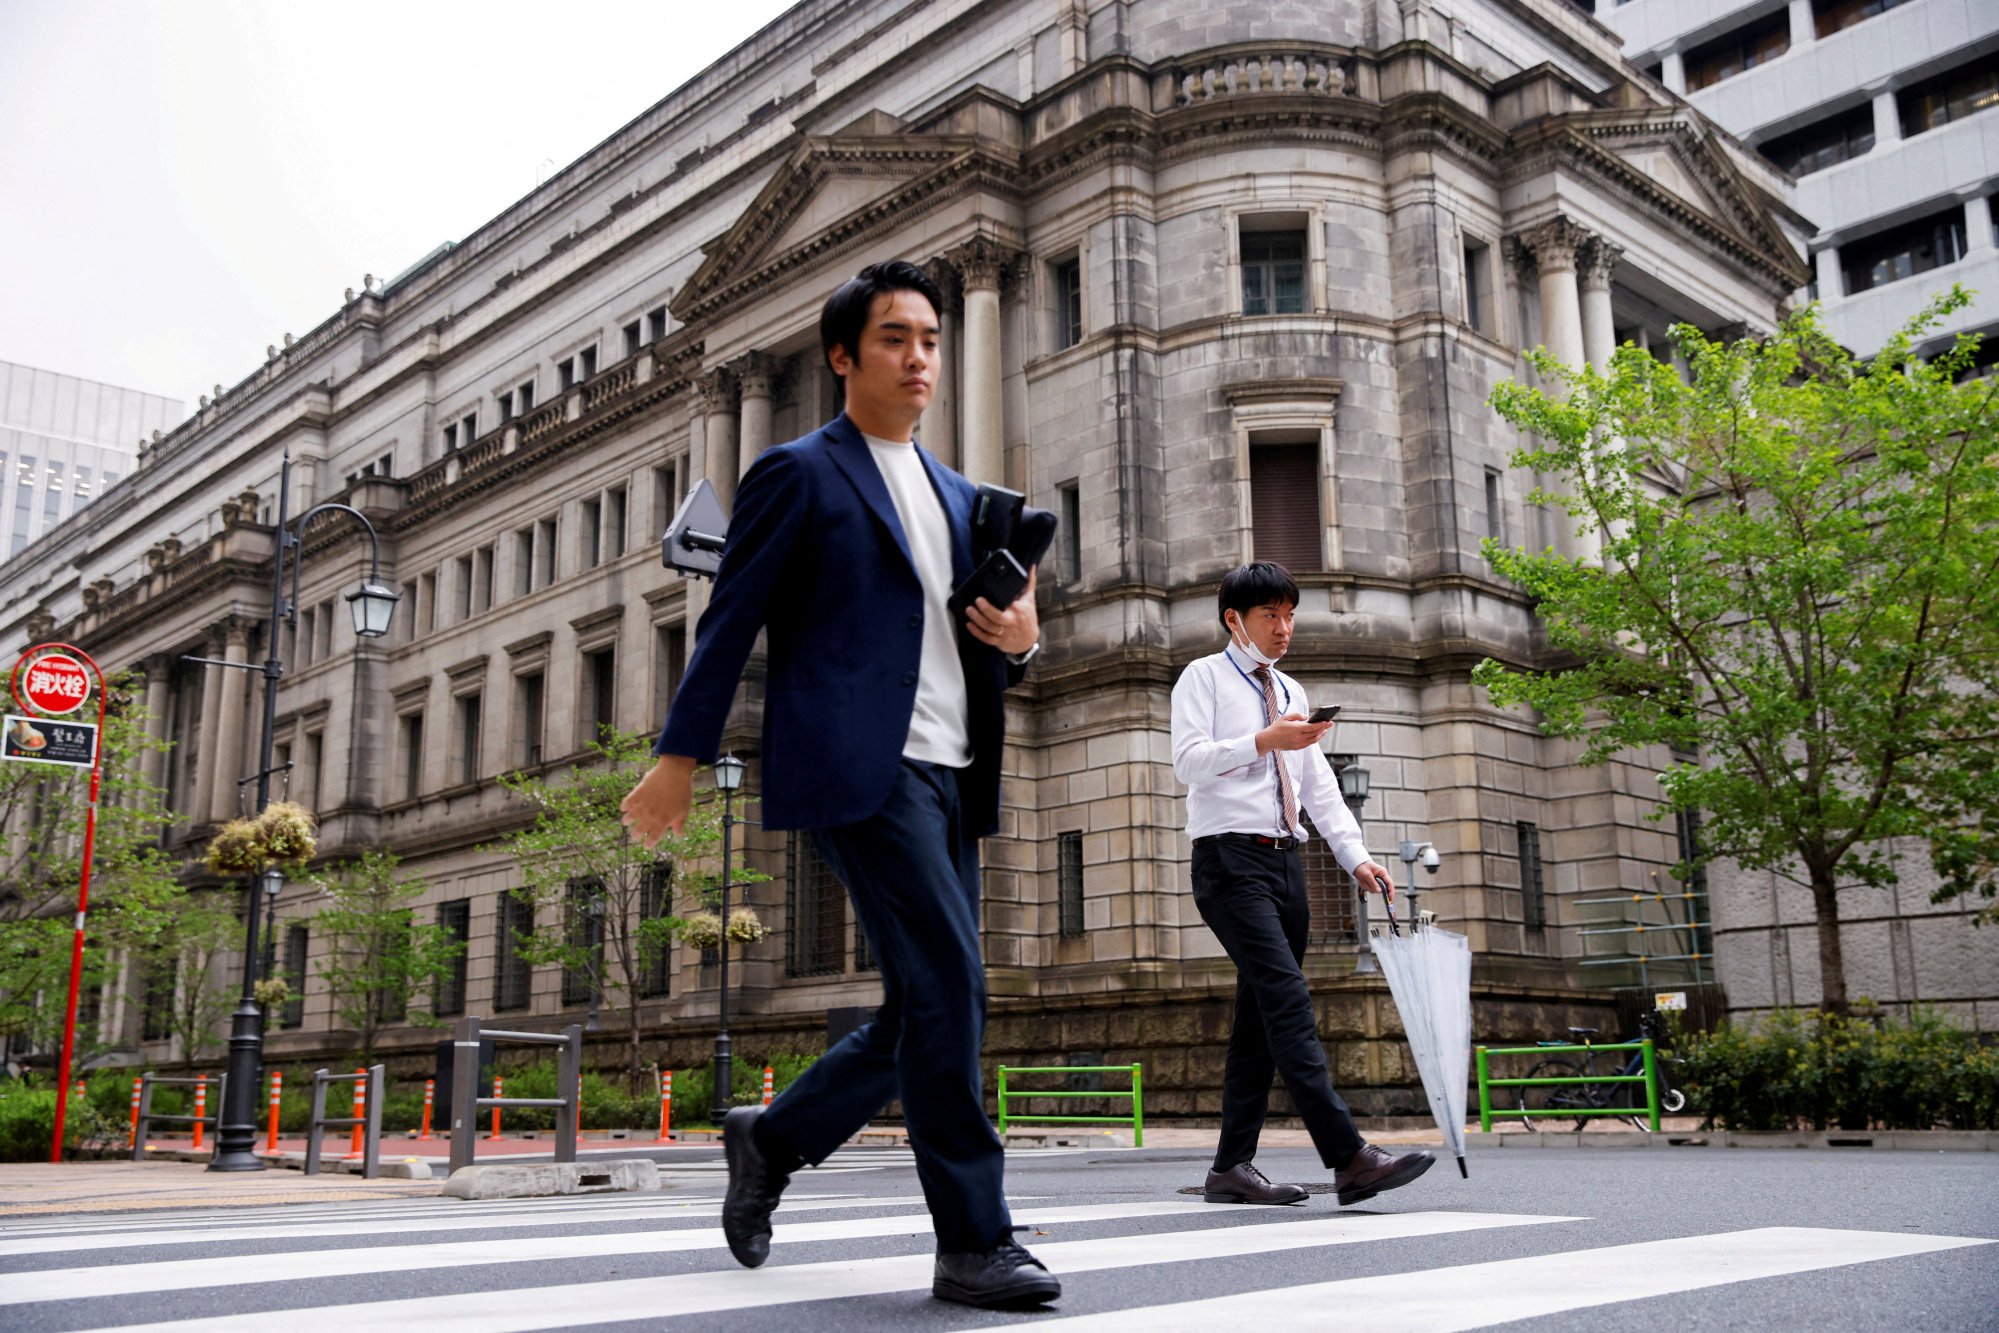 La excelente racha de las acciones japonesas podría desacelerarse en medio de un cambio esperado en la política monetaria